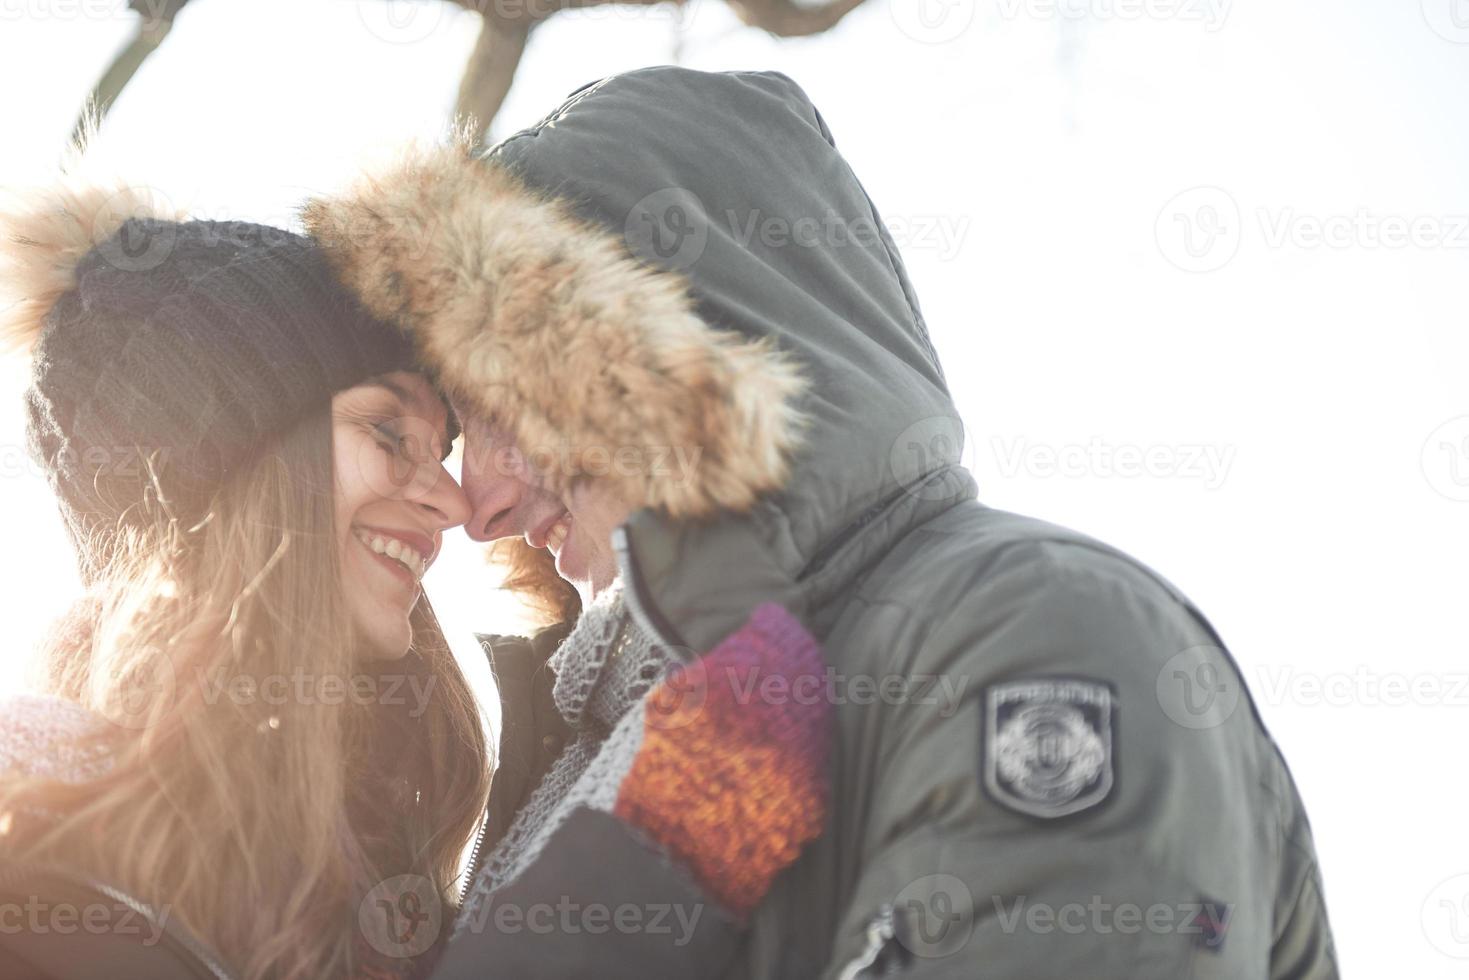 lyckligt ungt par i vinterparken som har kul. familj utomhus. foto